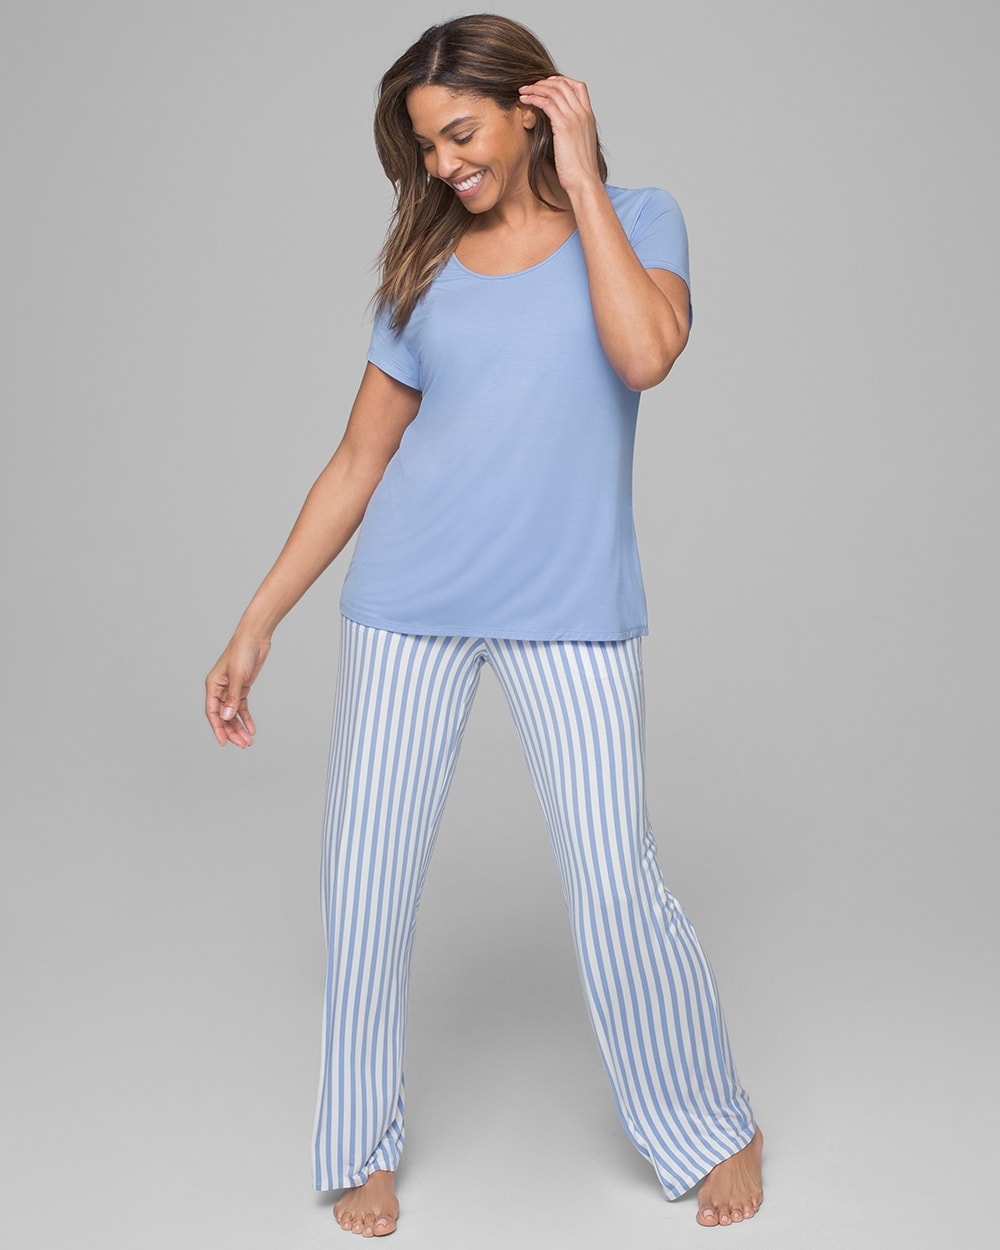 Women's Capri Pajama Set  Moisture Wicking Women's Pajamas – Cool